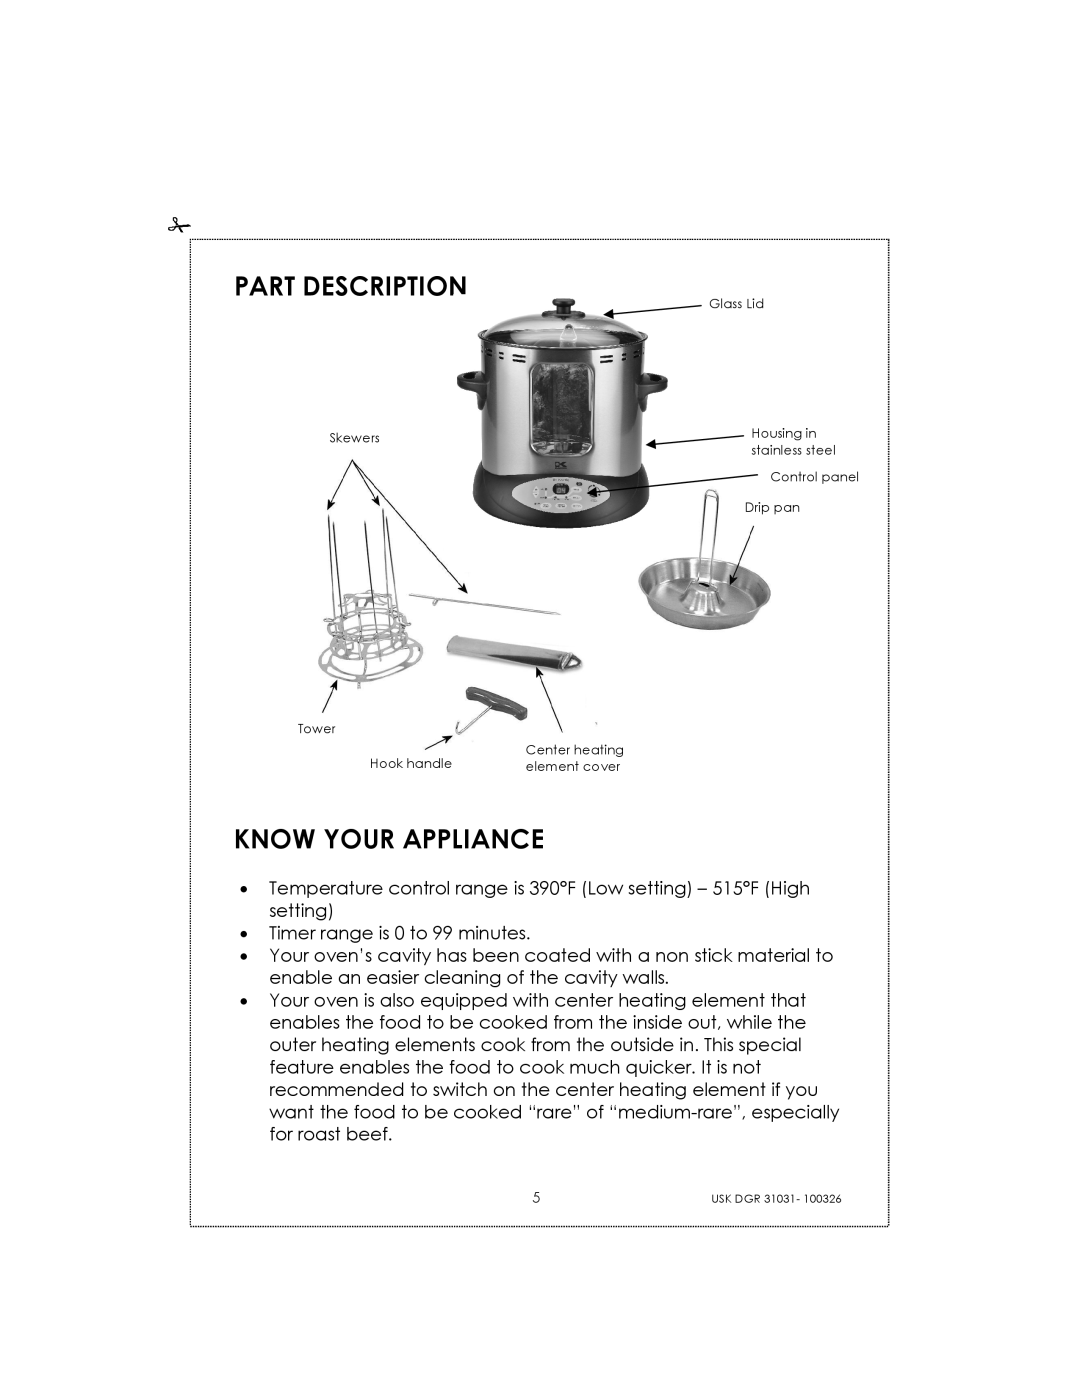 Kalorik USK DGR 31031 manual Part Description, Know Your Appliance 